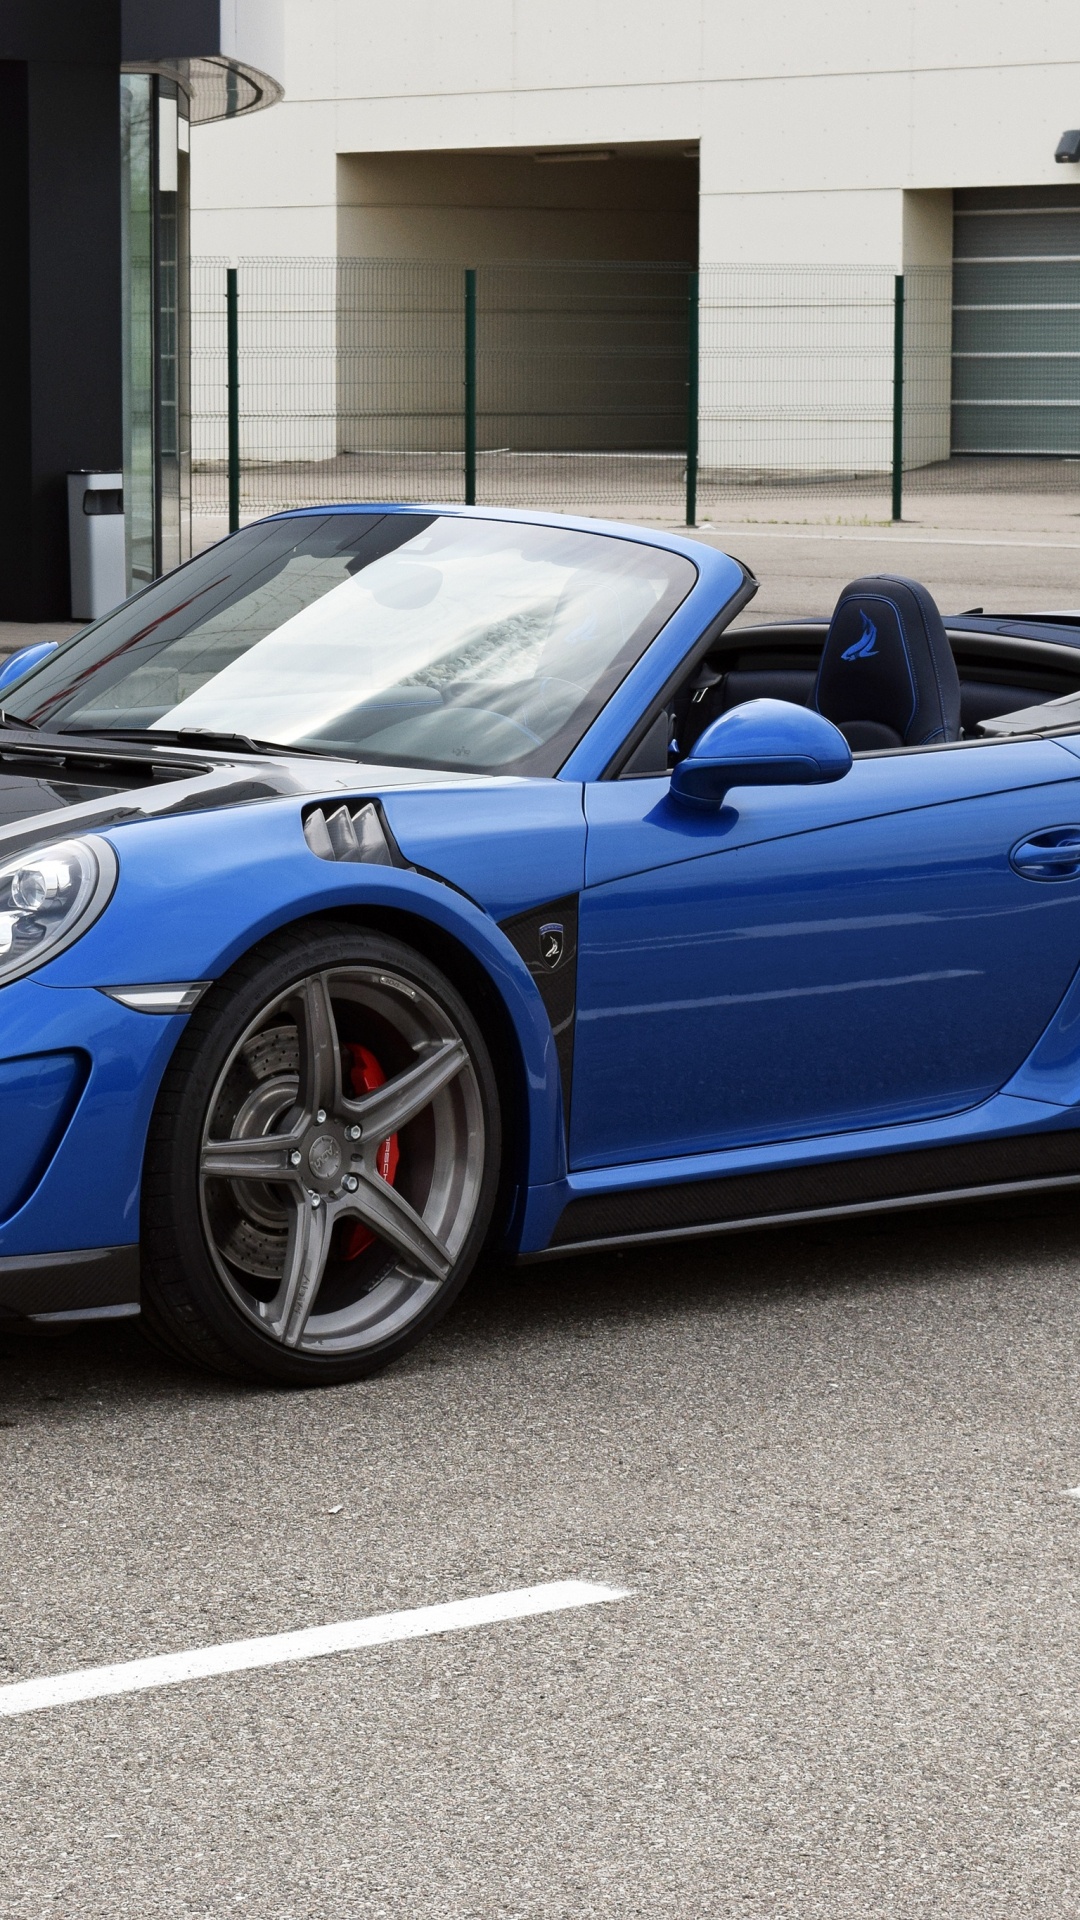 Porsche 911 Azul Estacionado Cerca Del Edificio Durante el Día. Wallpaper in 1080x1920 Resolution